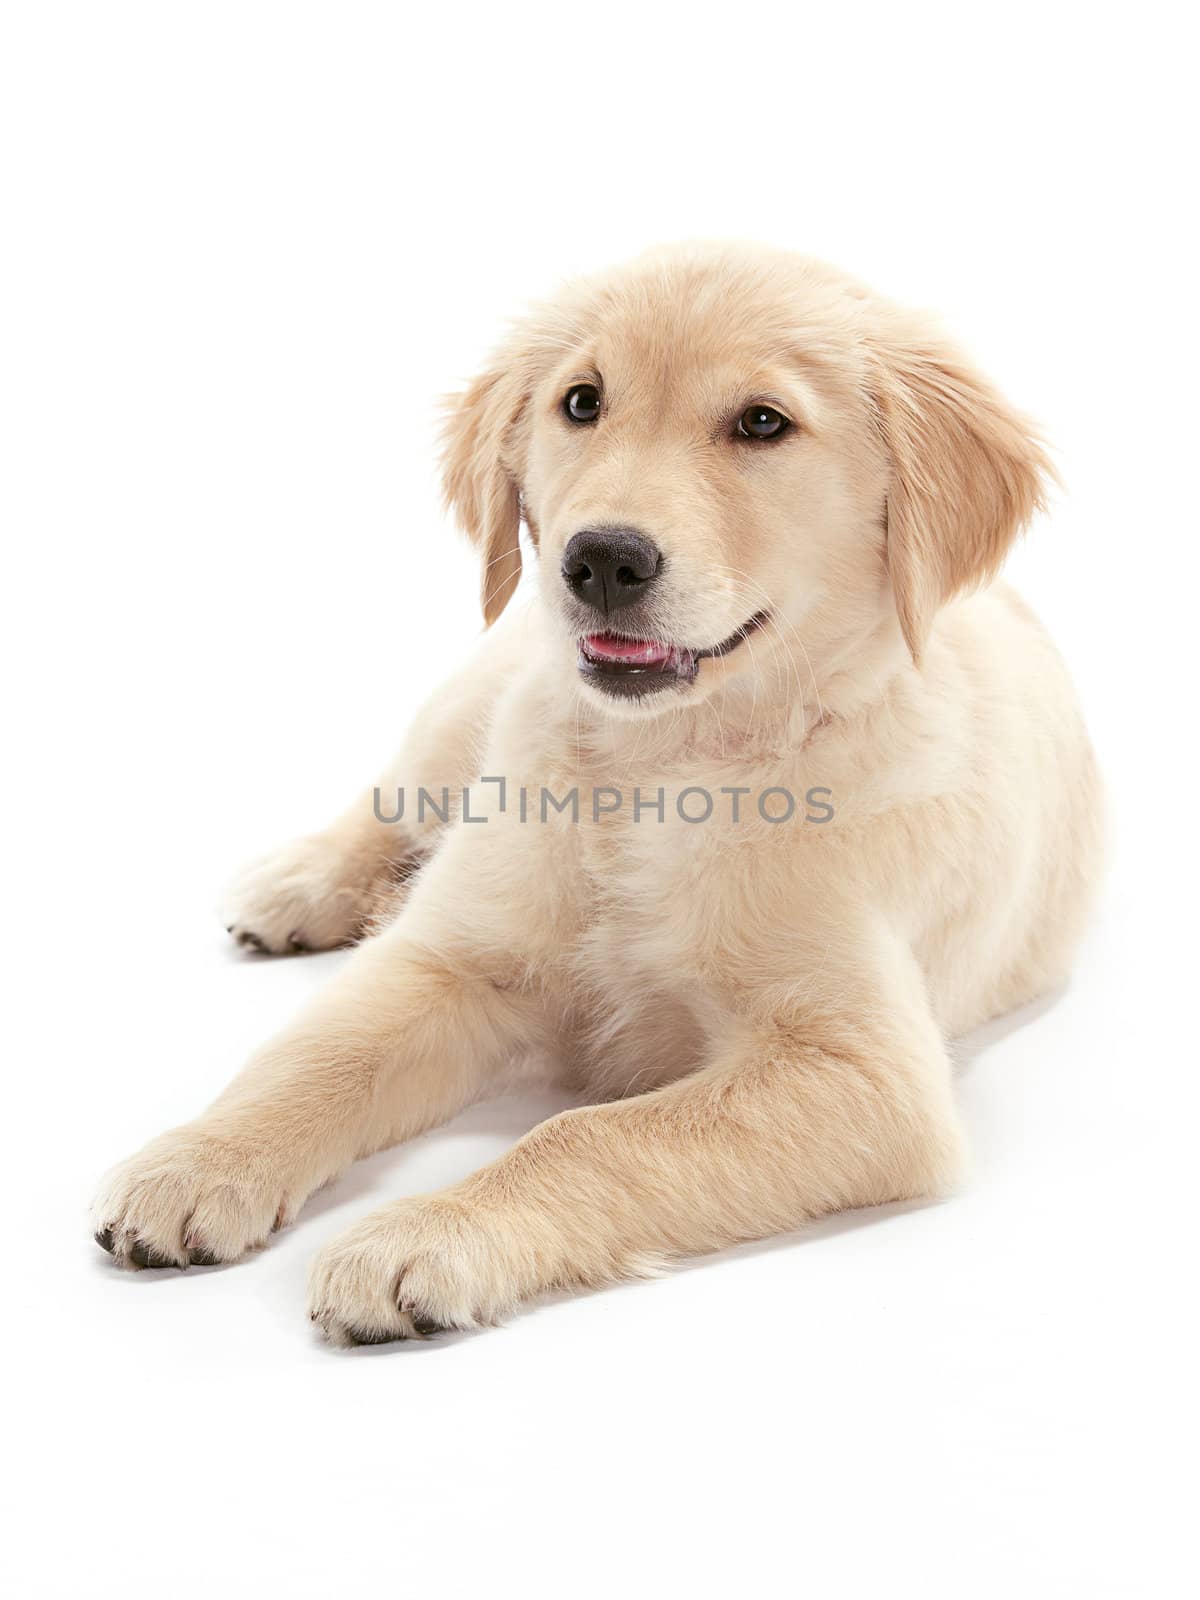 A Golden Retriever puppy relaxing on floor